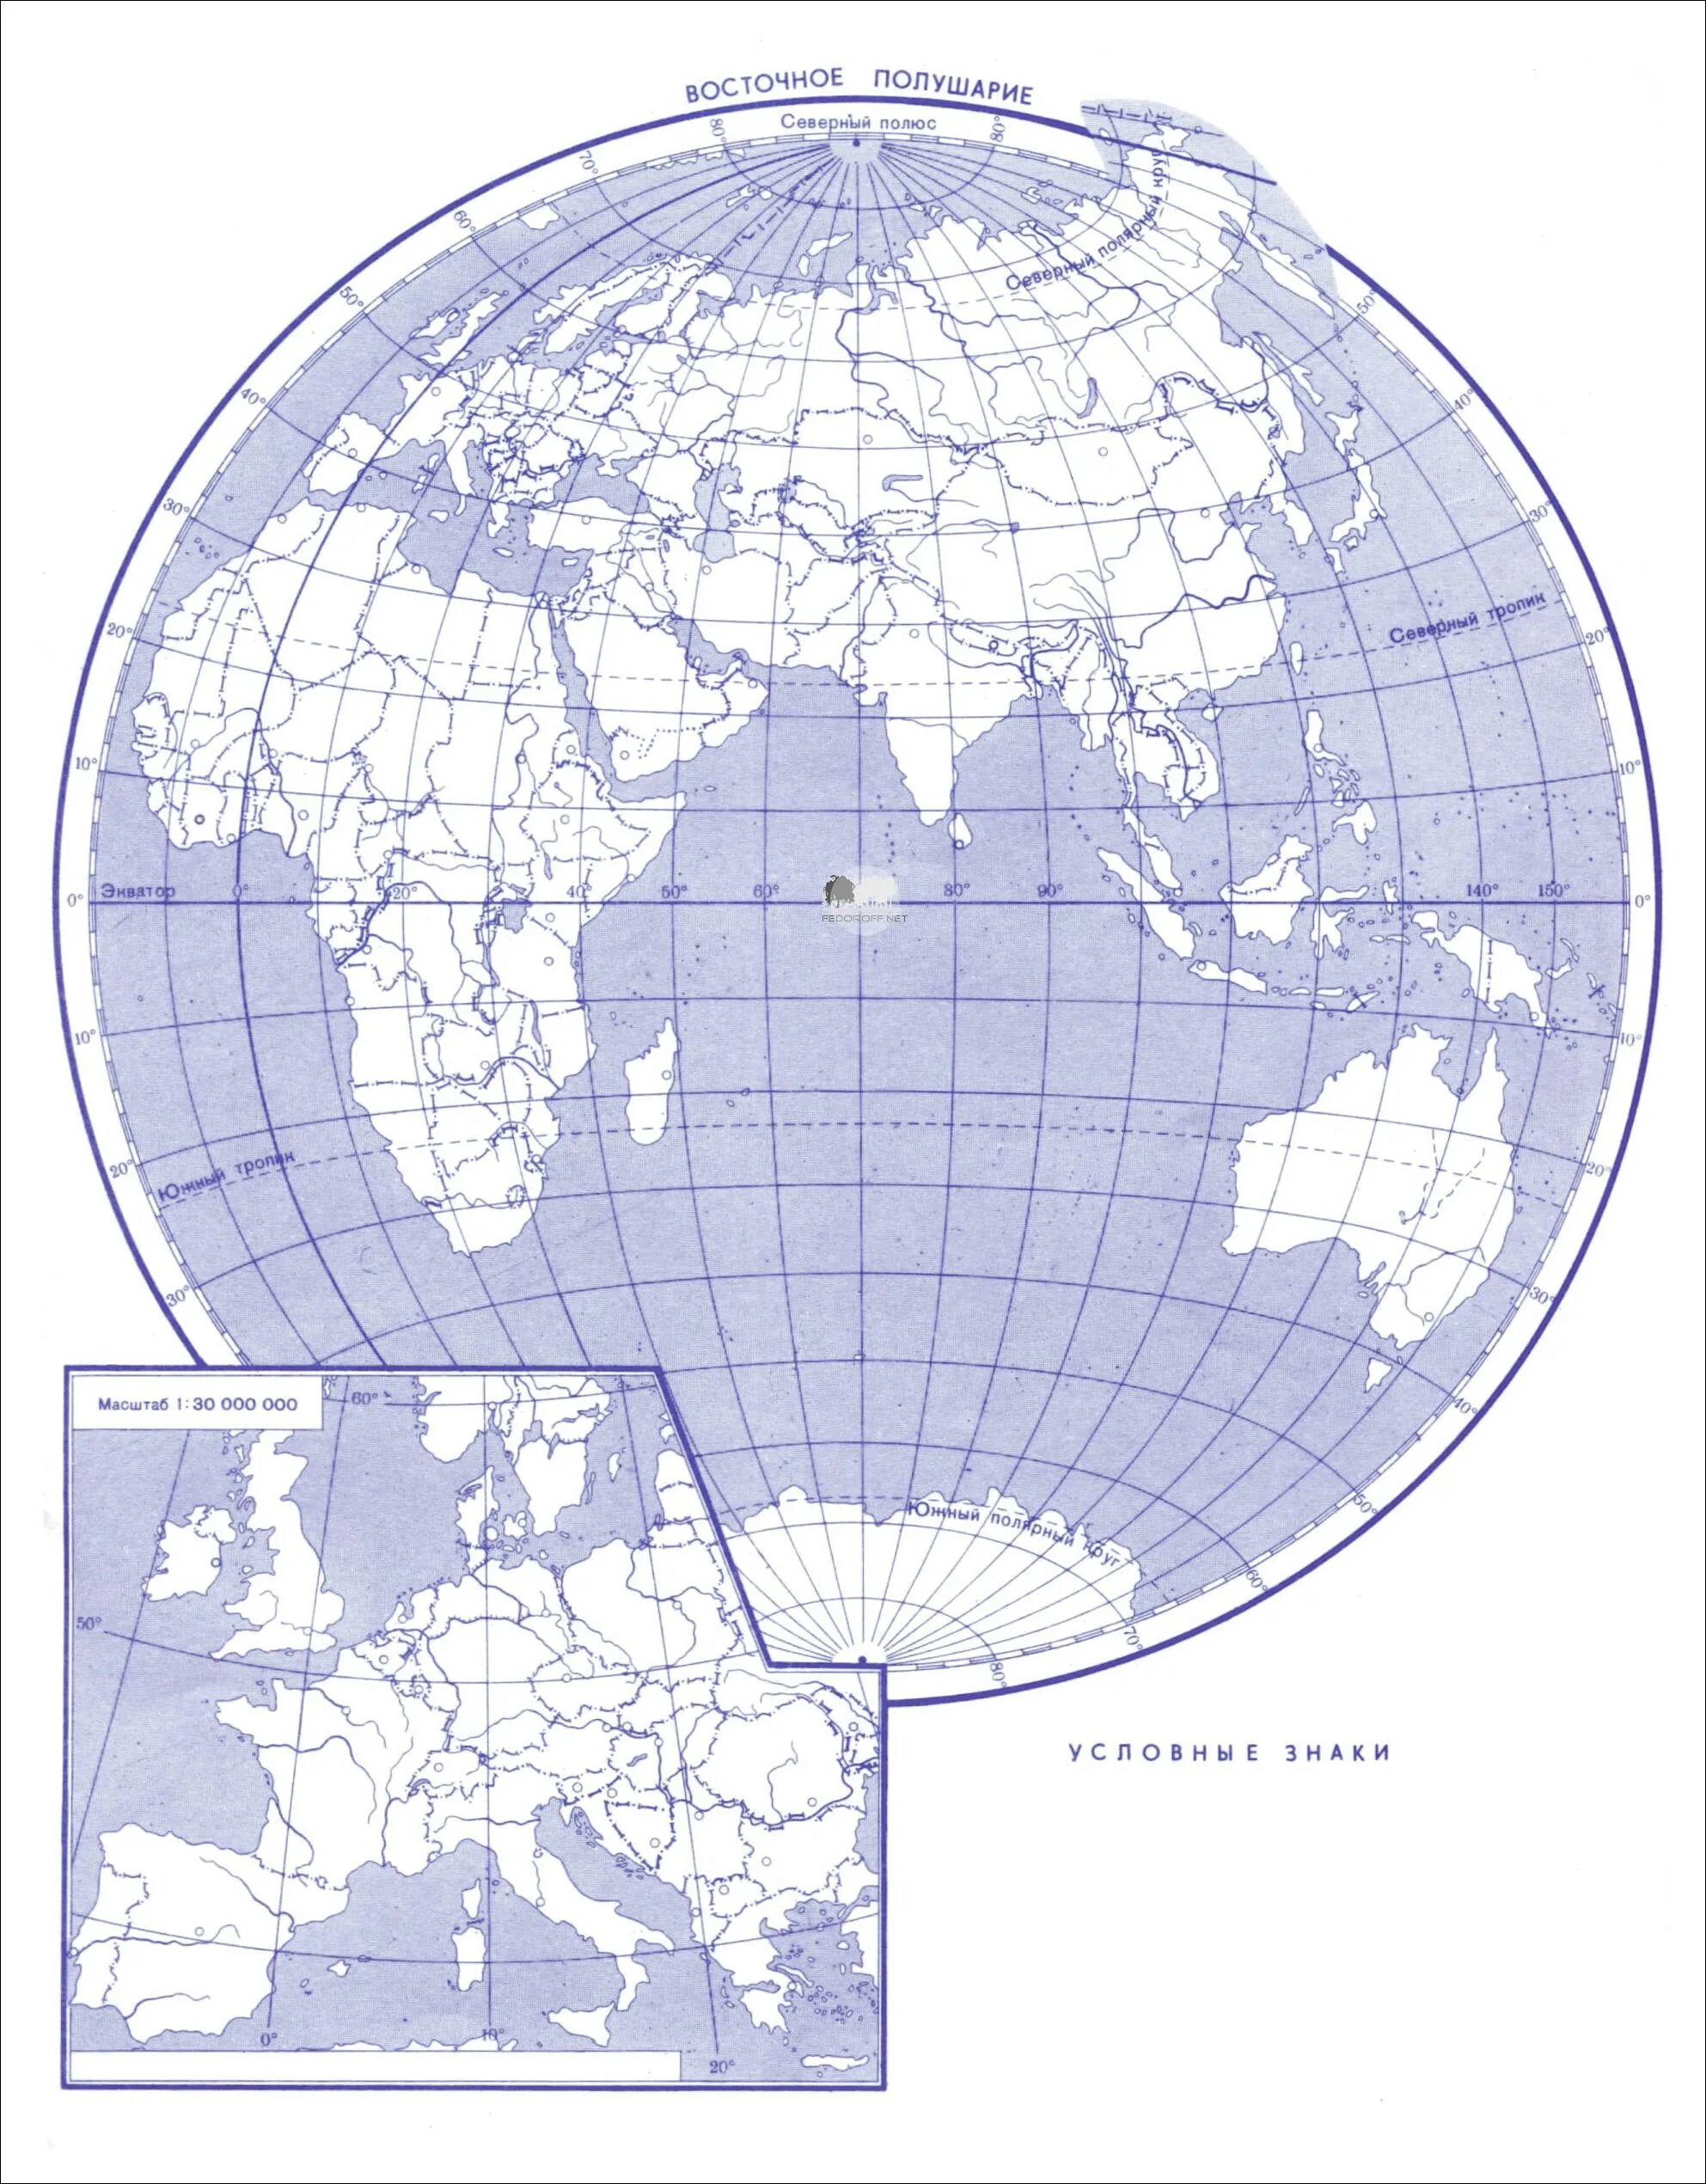 Физическая карта полушарий контурная Восточное полушарие. Физическая карта полушарий Восточное полушарие. Контурная карта восточного полушария. Контурная карта полушарий Западное полушарие Восточное полушарие.